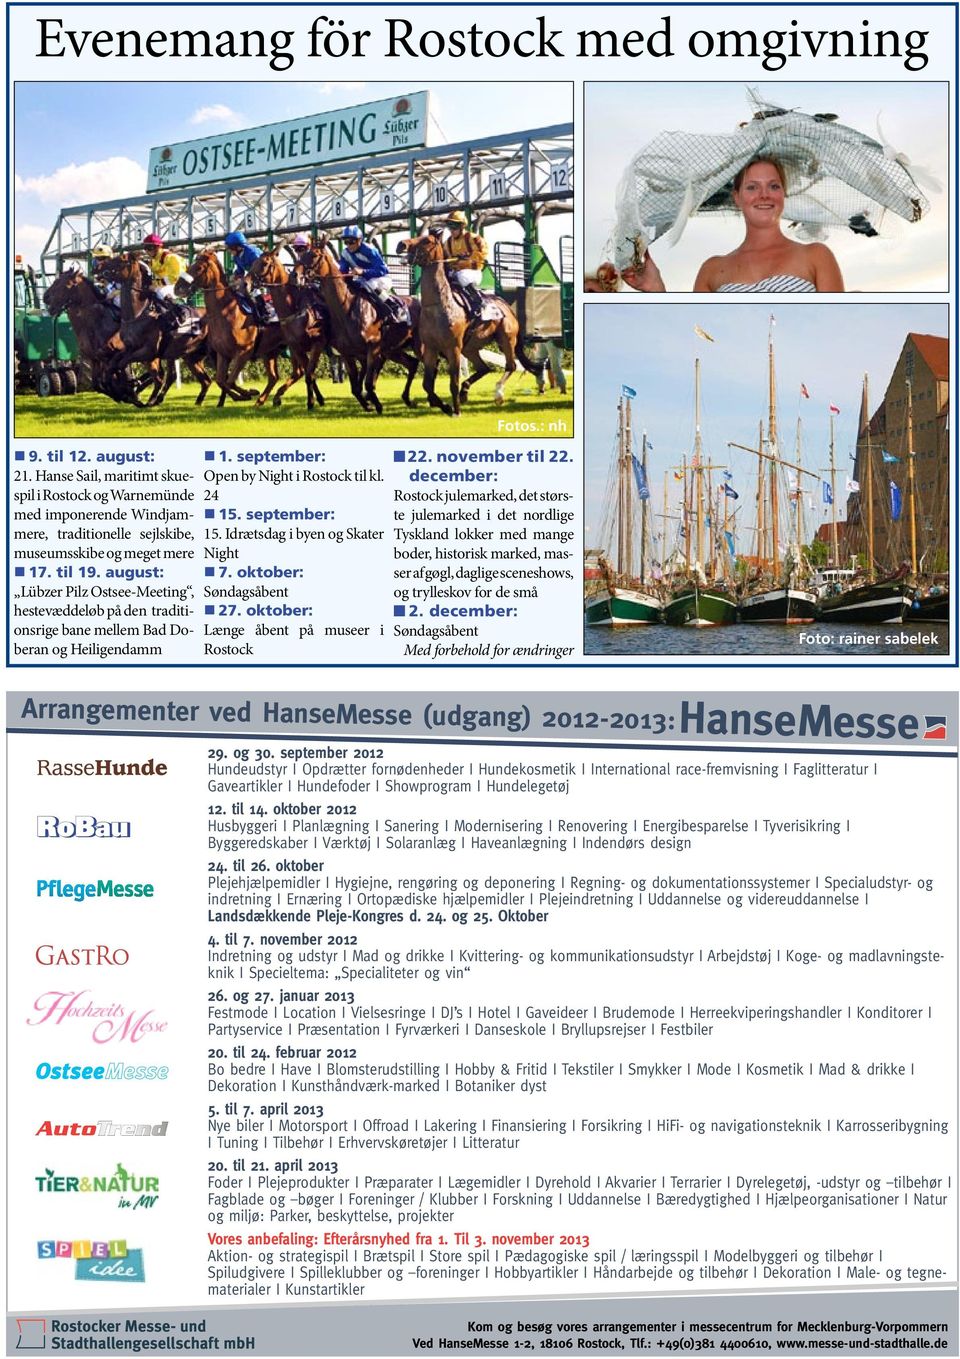 august: Lübzer Pilz Ostsee-Meeting, hestevæddeløb på den traditionsrige bane mellem Bad Doberan og Heiligendamm 1. september: Open by Night i Rostock til kl. 24 15. september: 15.